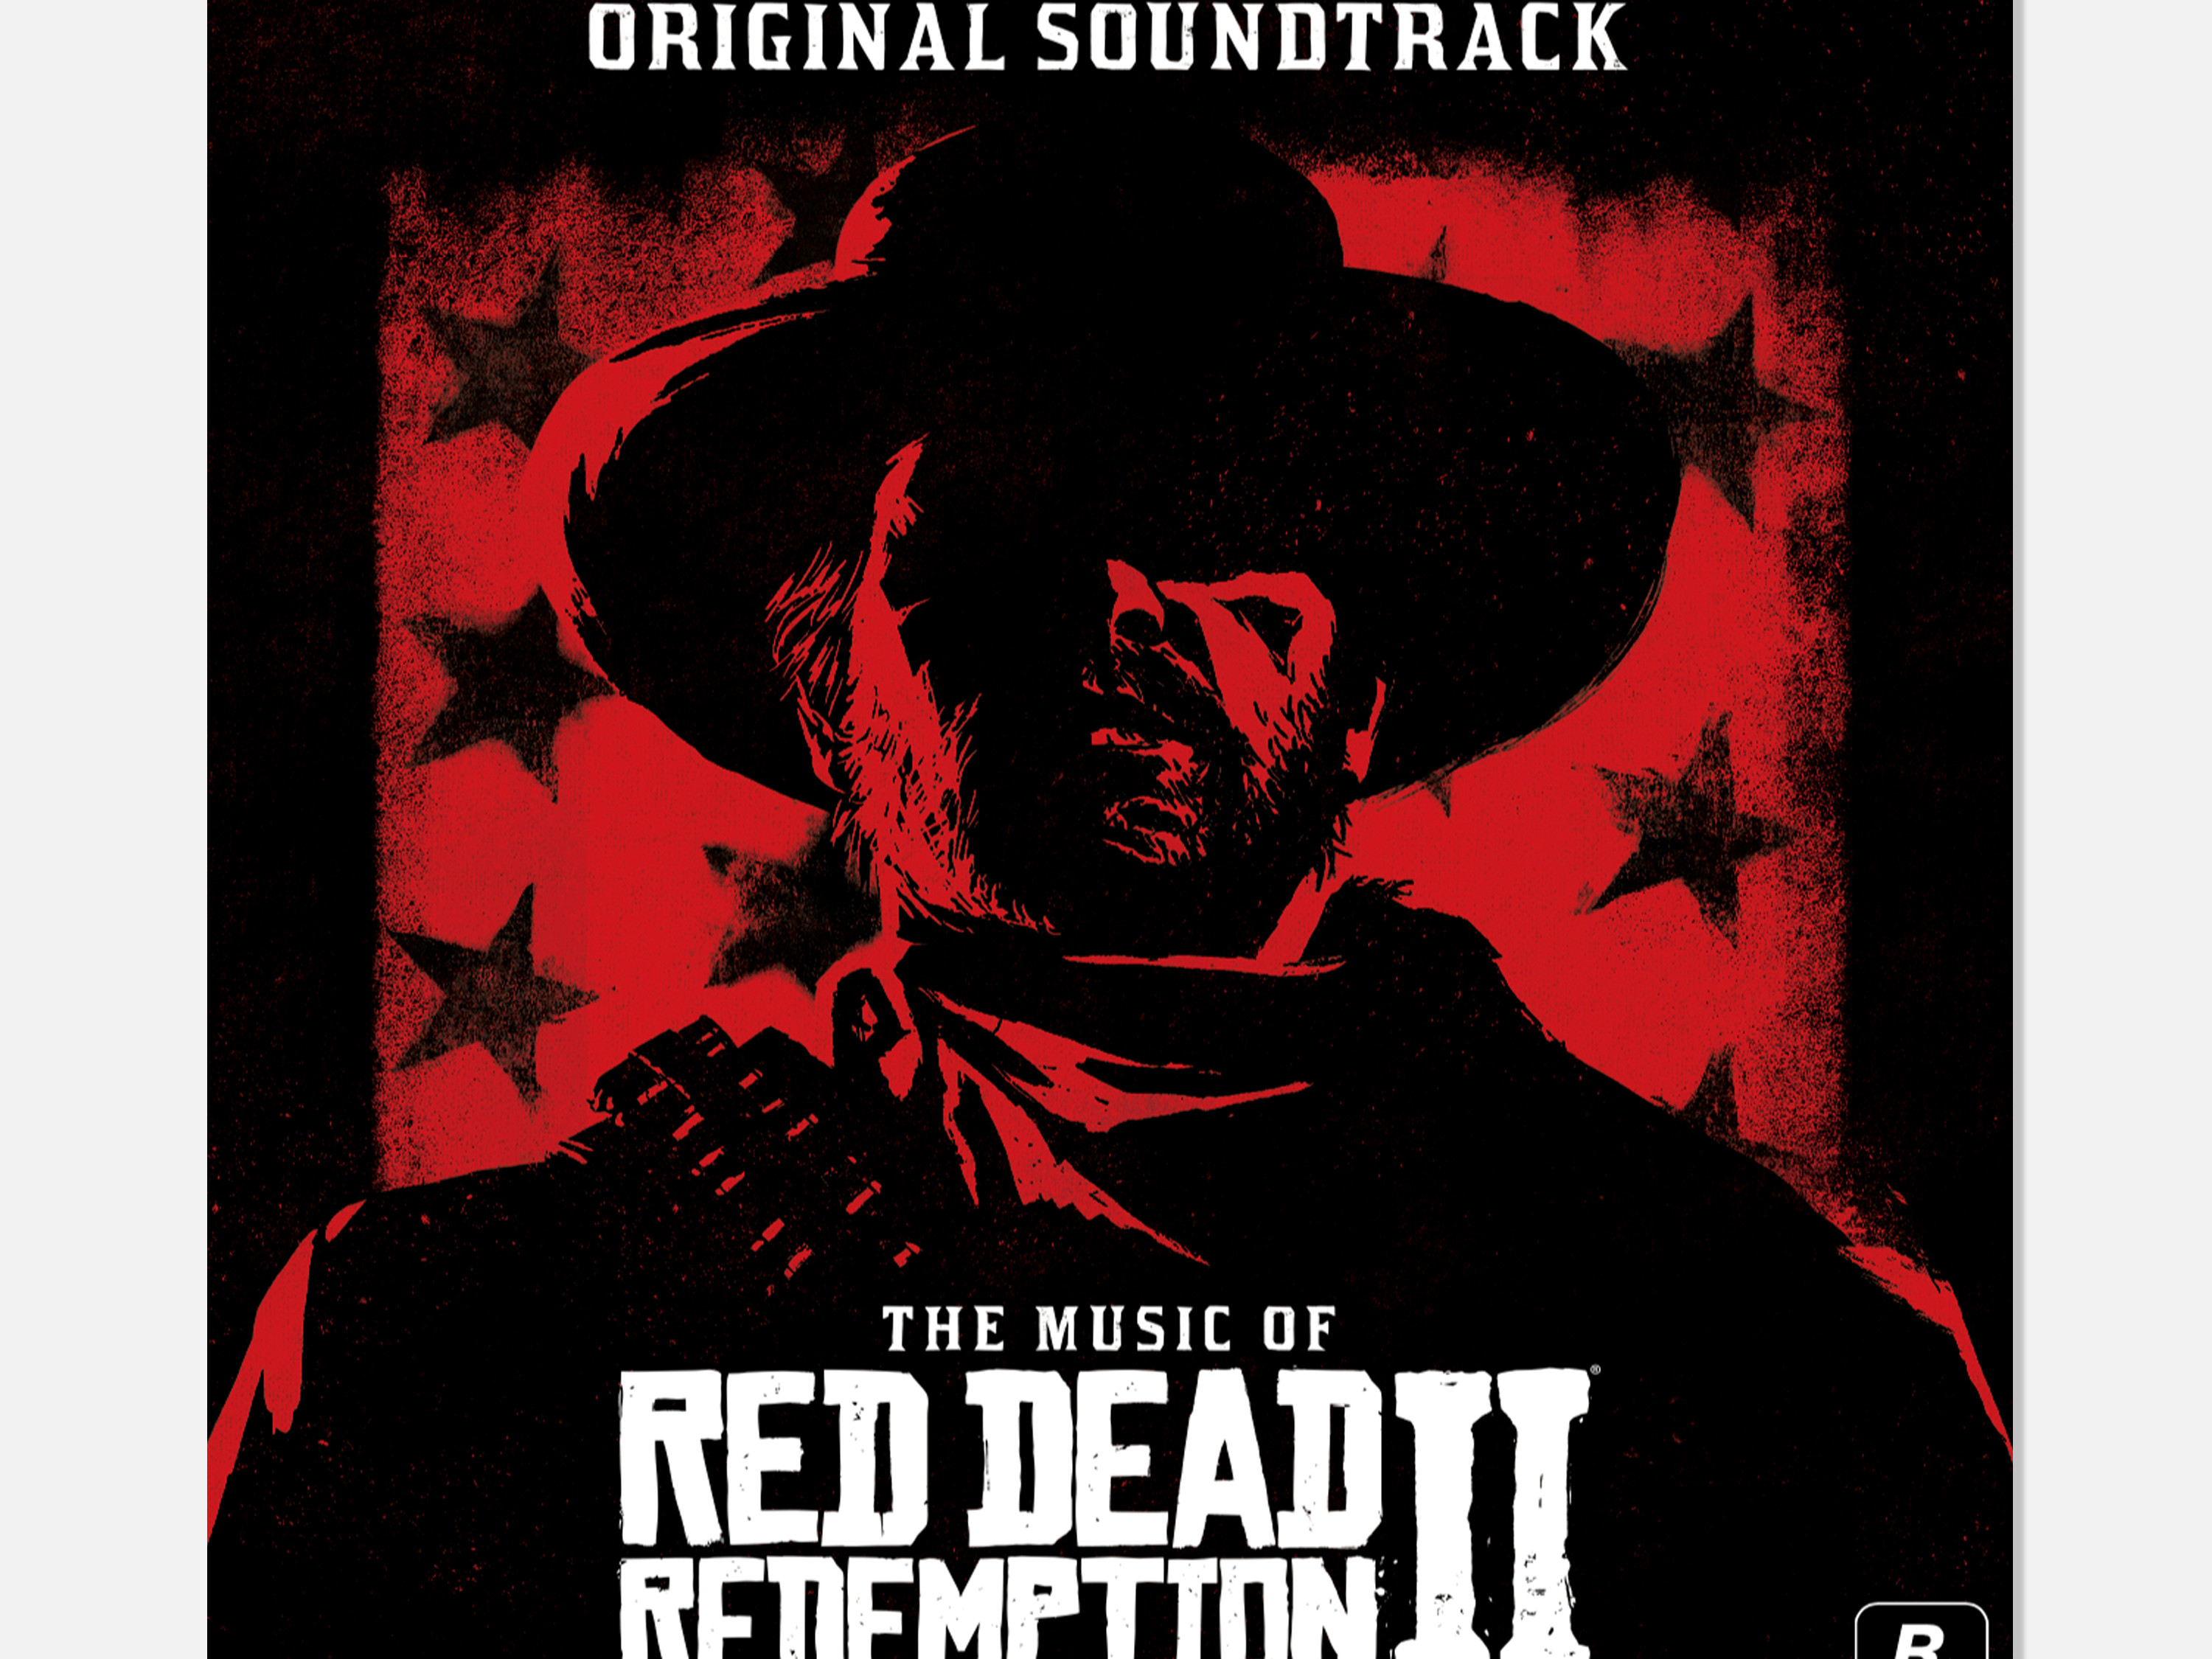 Pochette de l'Original Soundtrack de Red Dead Redemption II